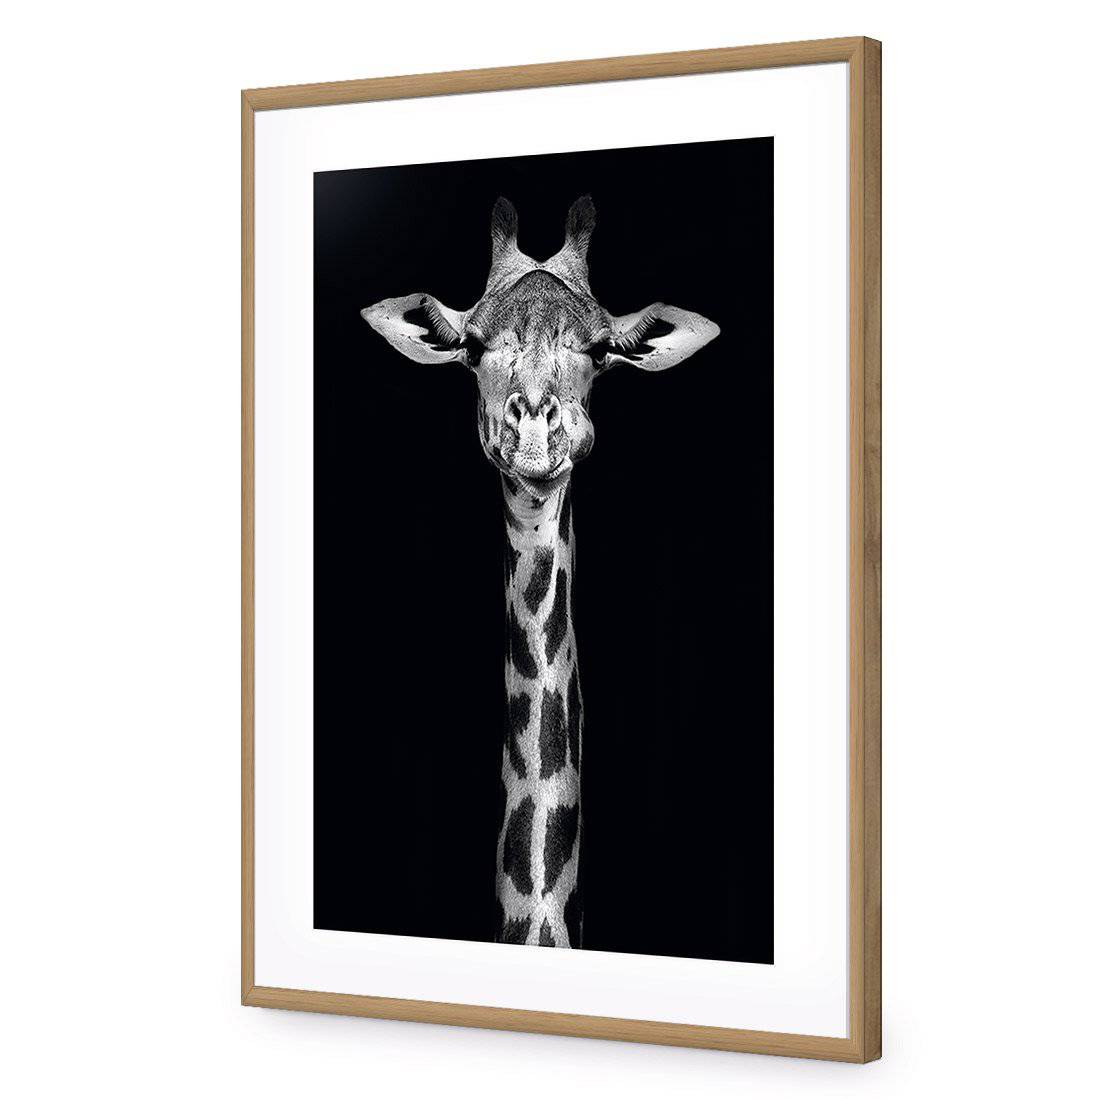 Thornycroft Giraffe-Acrylic-Wall Art Design-With Border-Acrylic - Oak Frame-45x30cm-Wall Art Designs